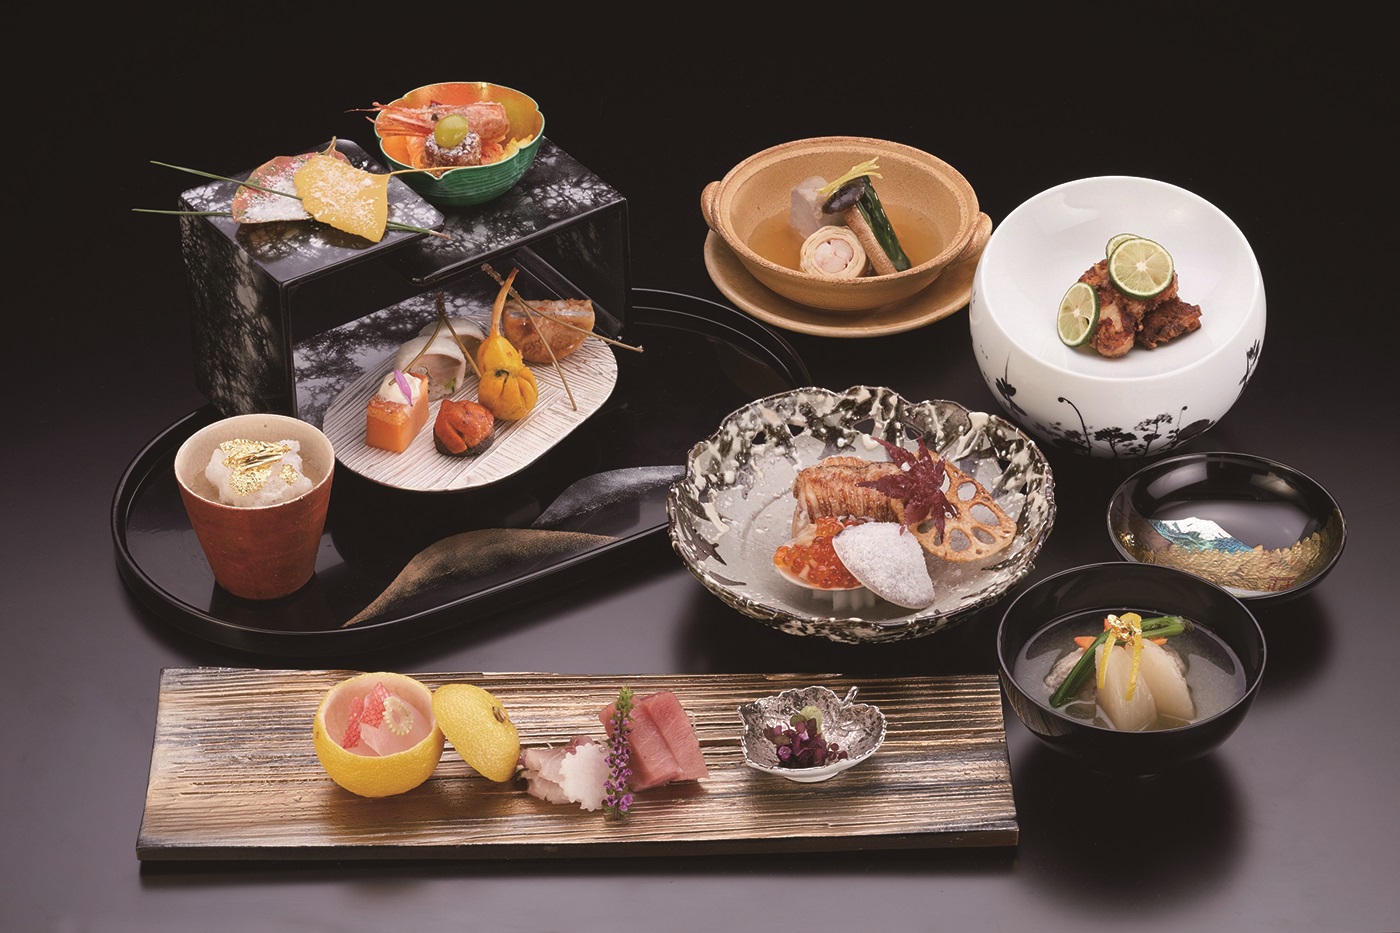 伝統的な懐石料理が自慢のクラシカルなリゾートホテル♪ 神奈川県 箱根・湯河原への旅！おでかけプラン 選べる夕食「懐石料理」 ツイン